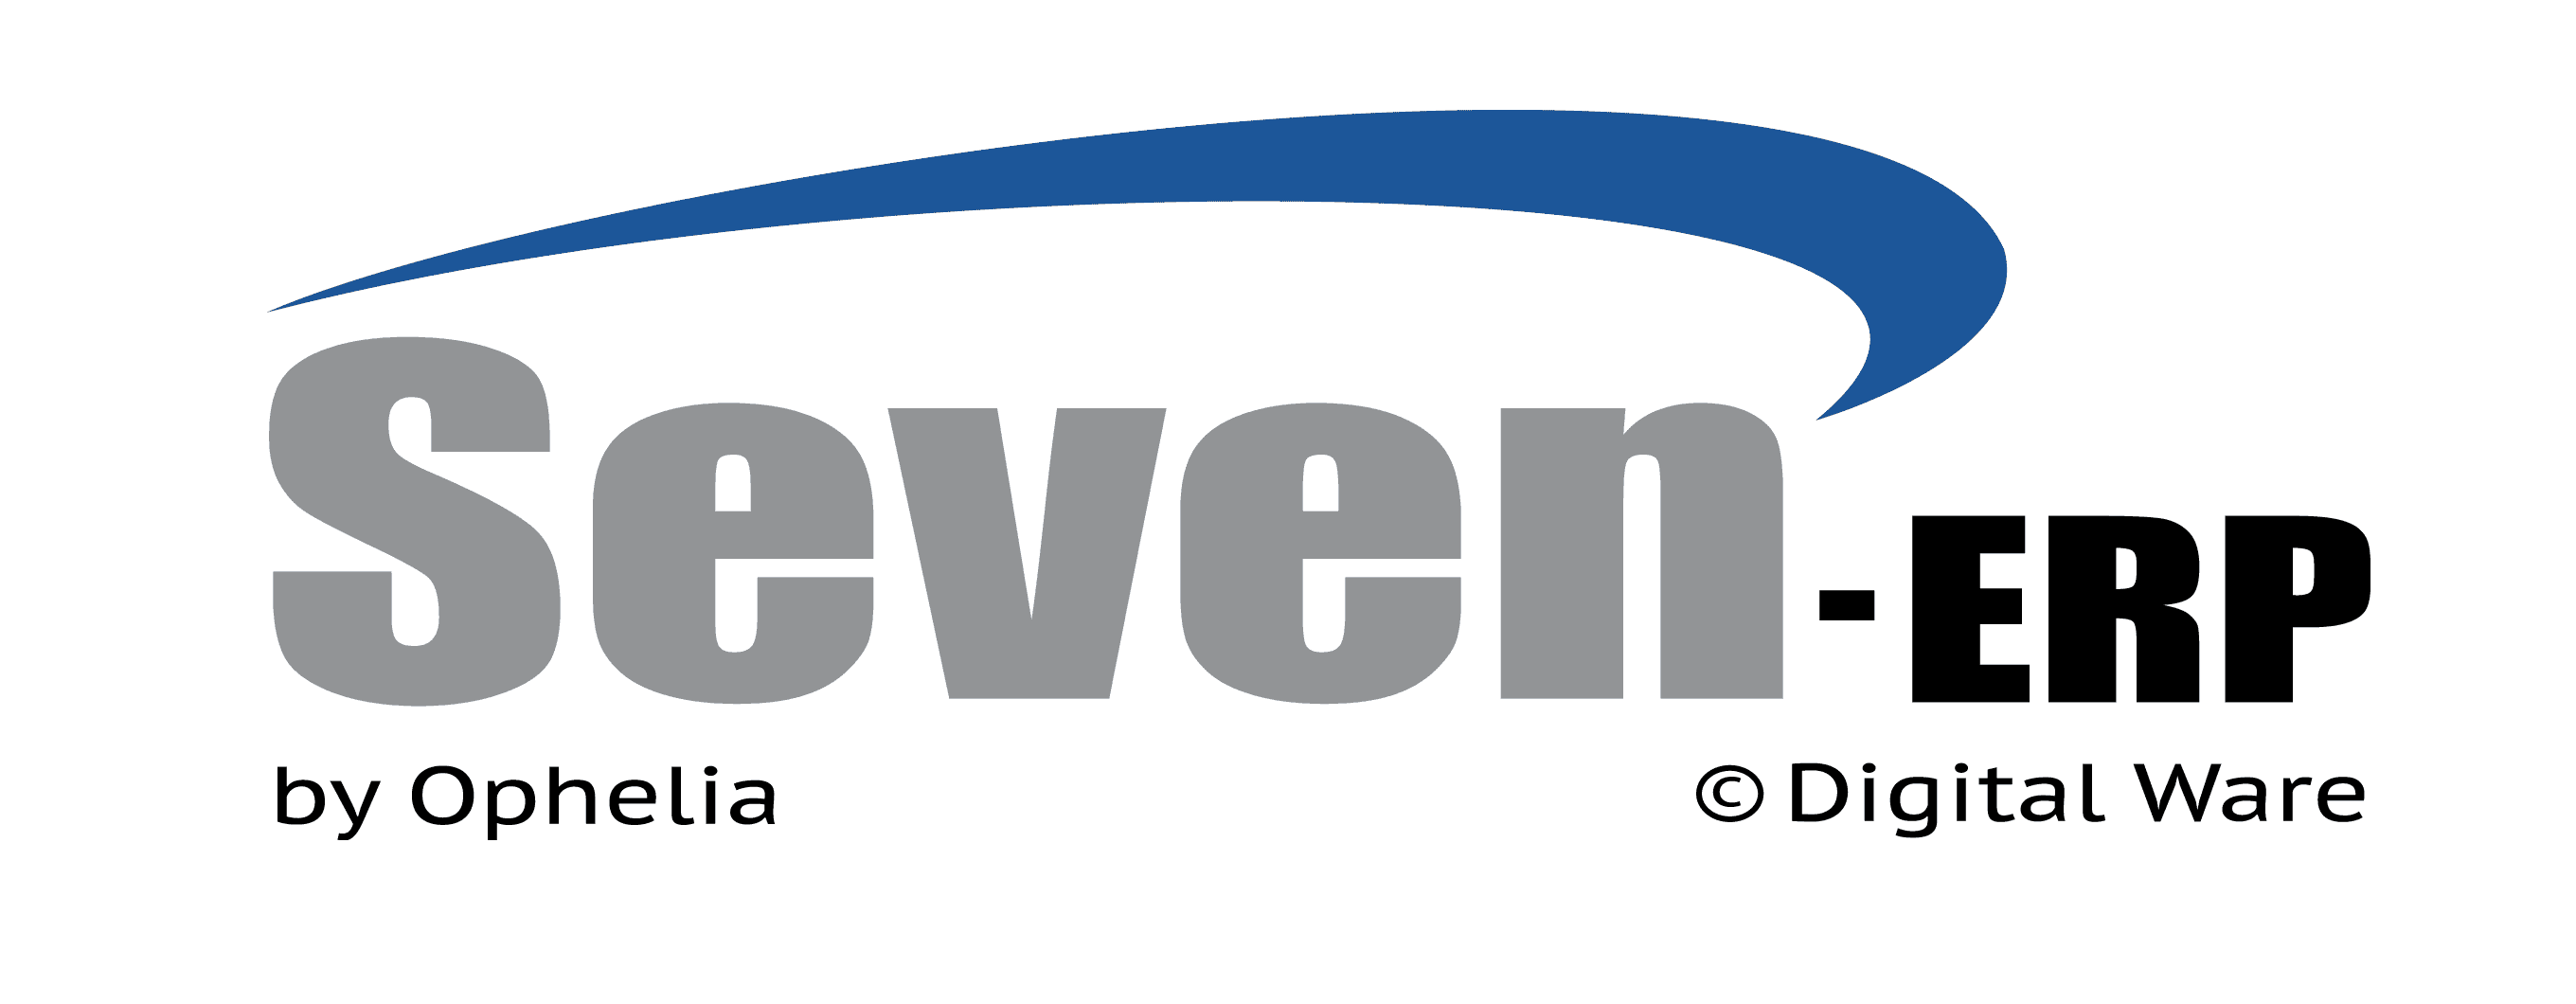 Seven-ERP  - Sistema ERP de Compras